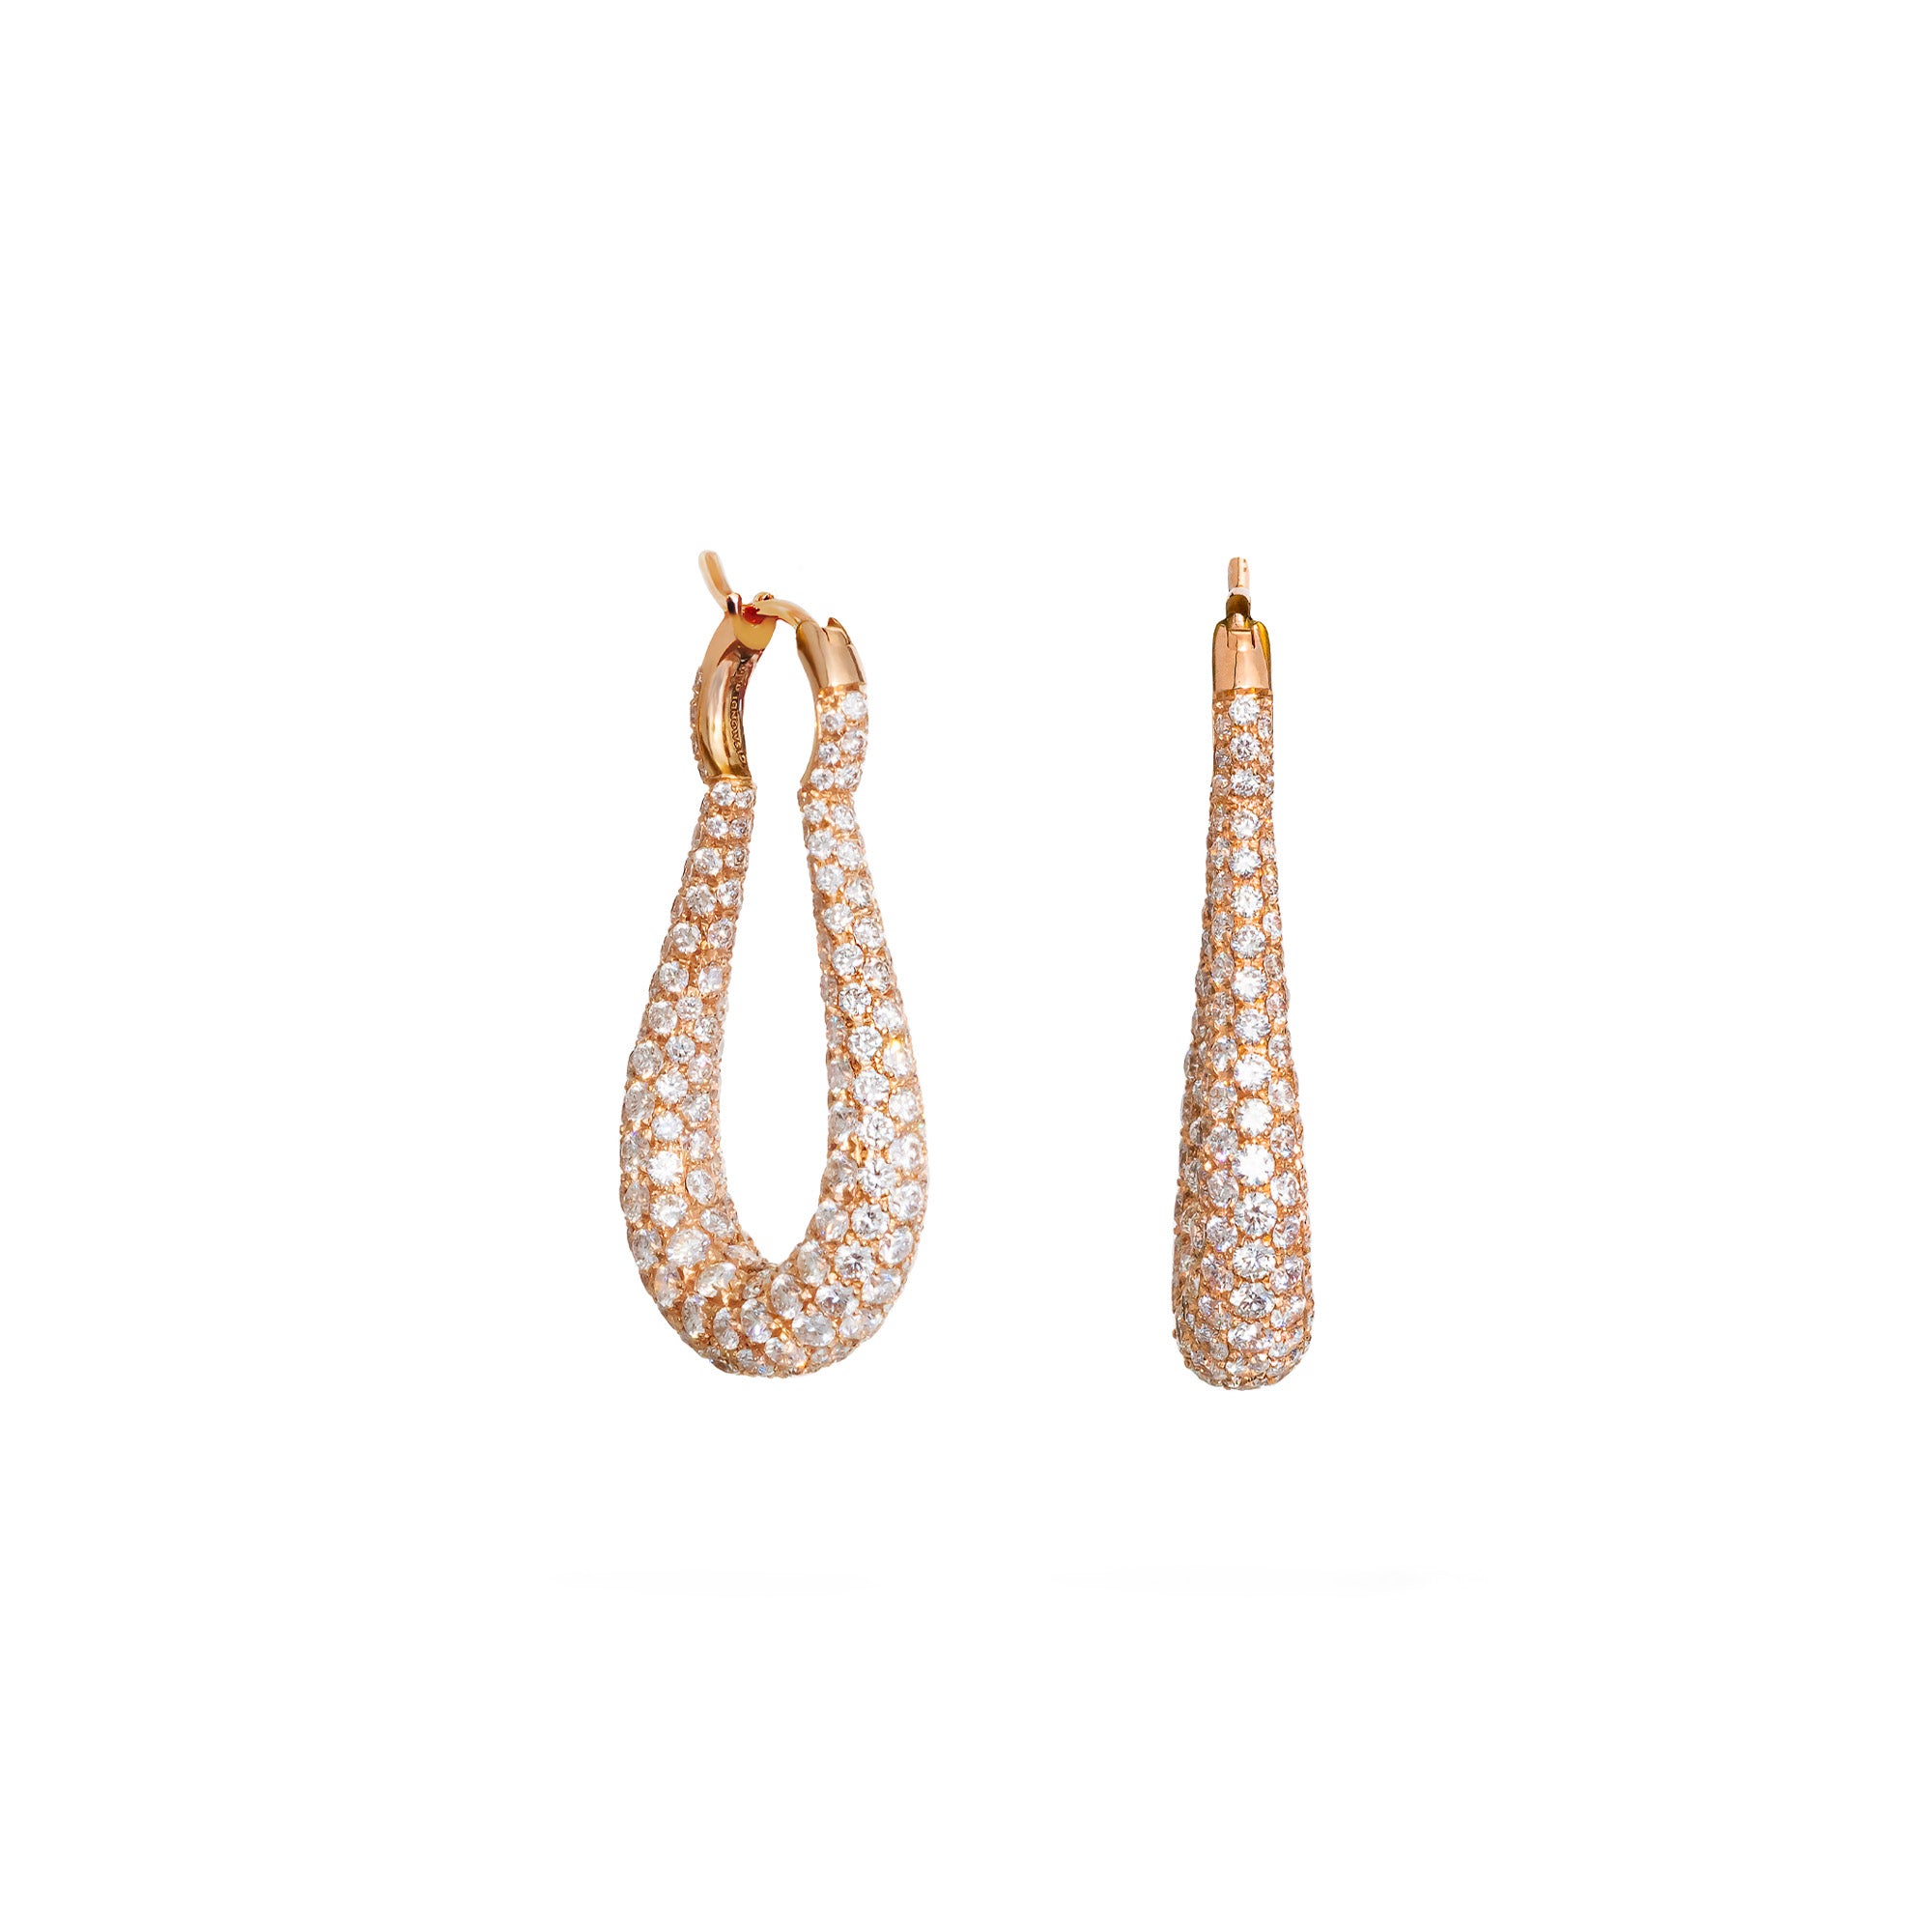 Vela Rose Gold Earrings With Diamonds